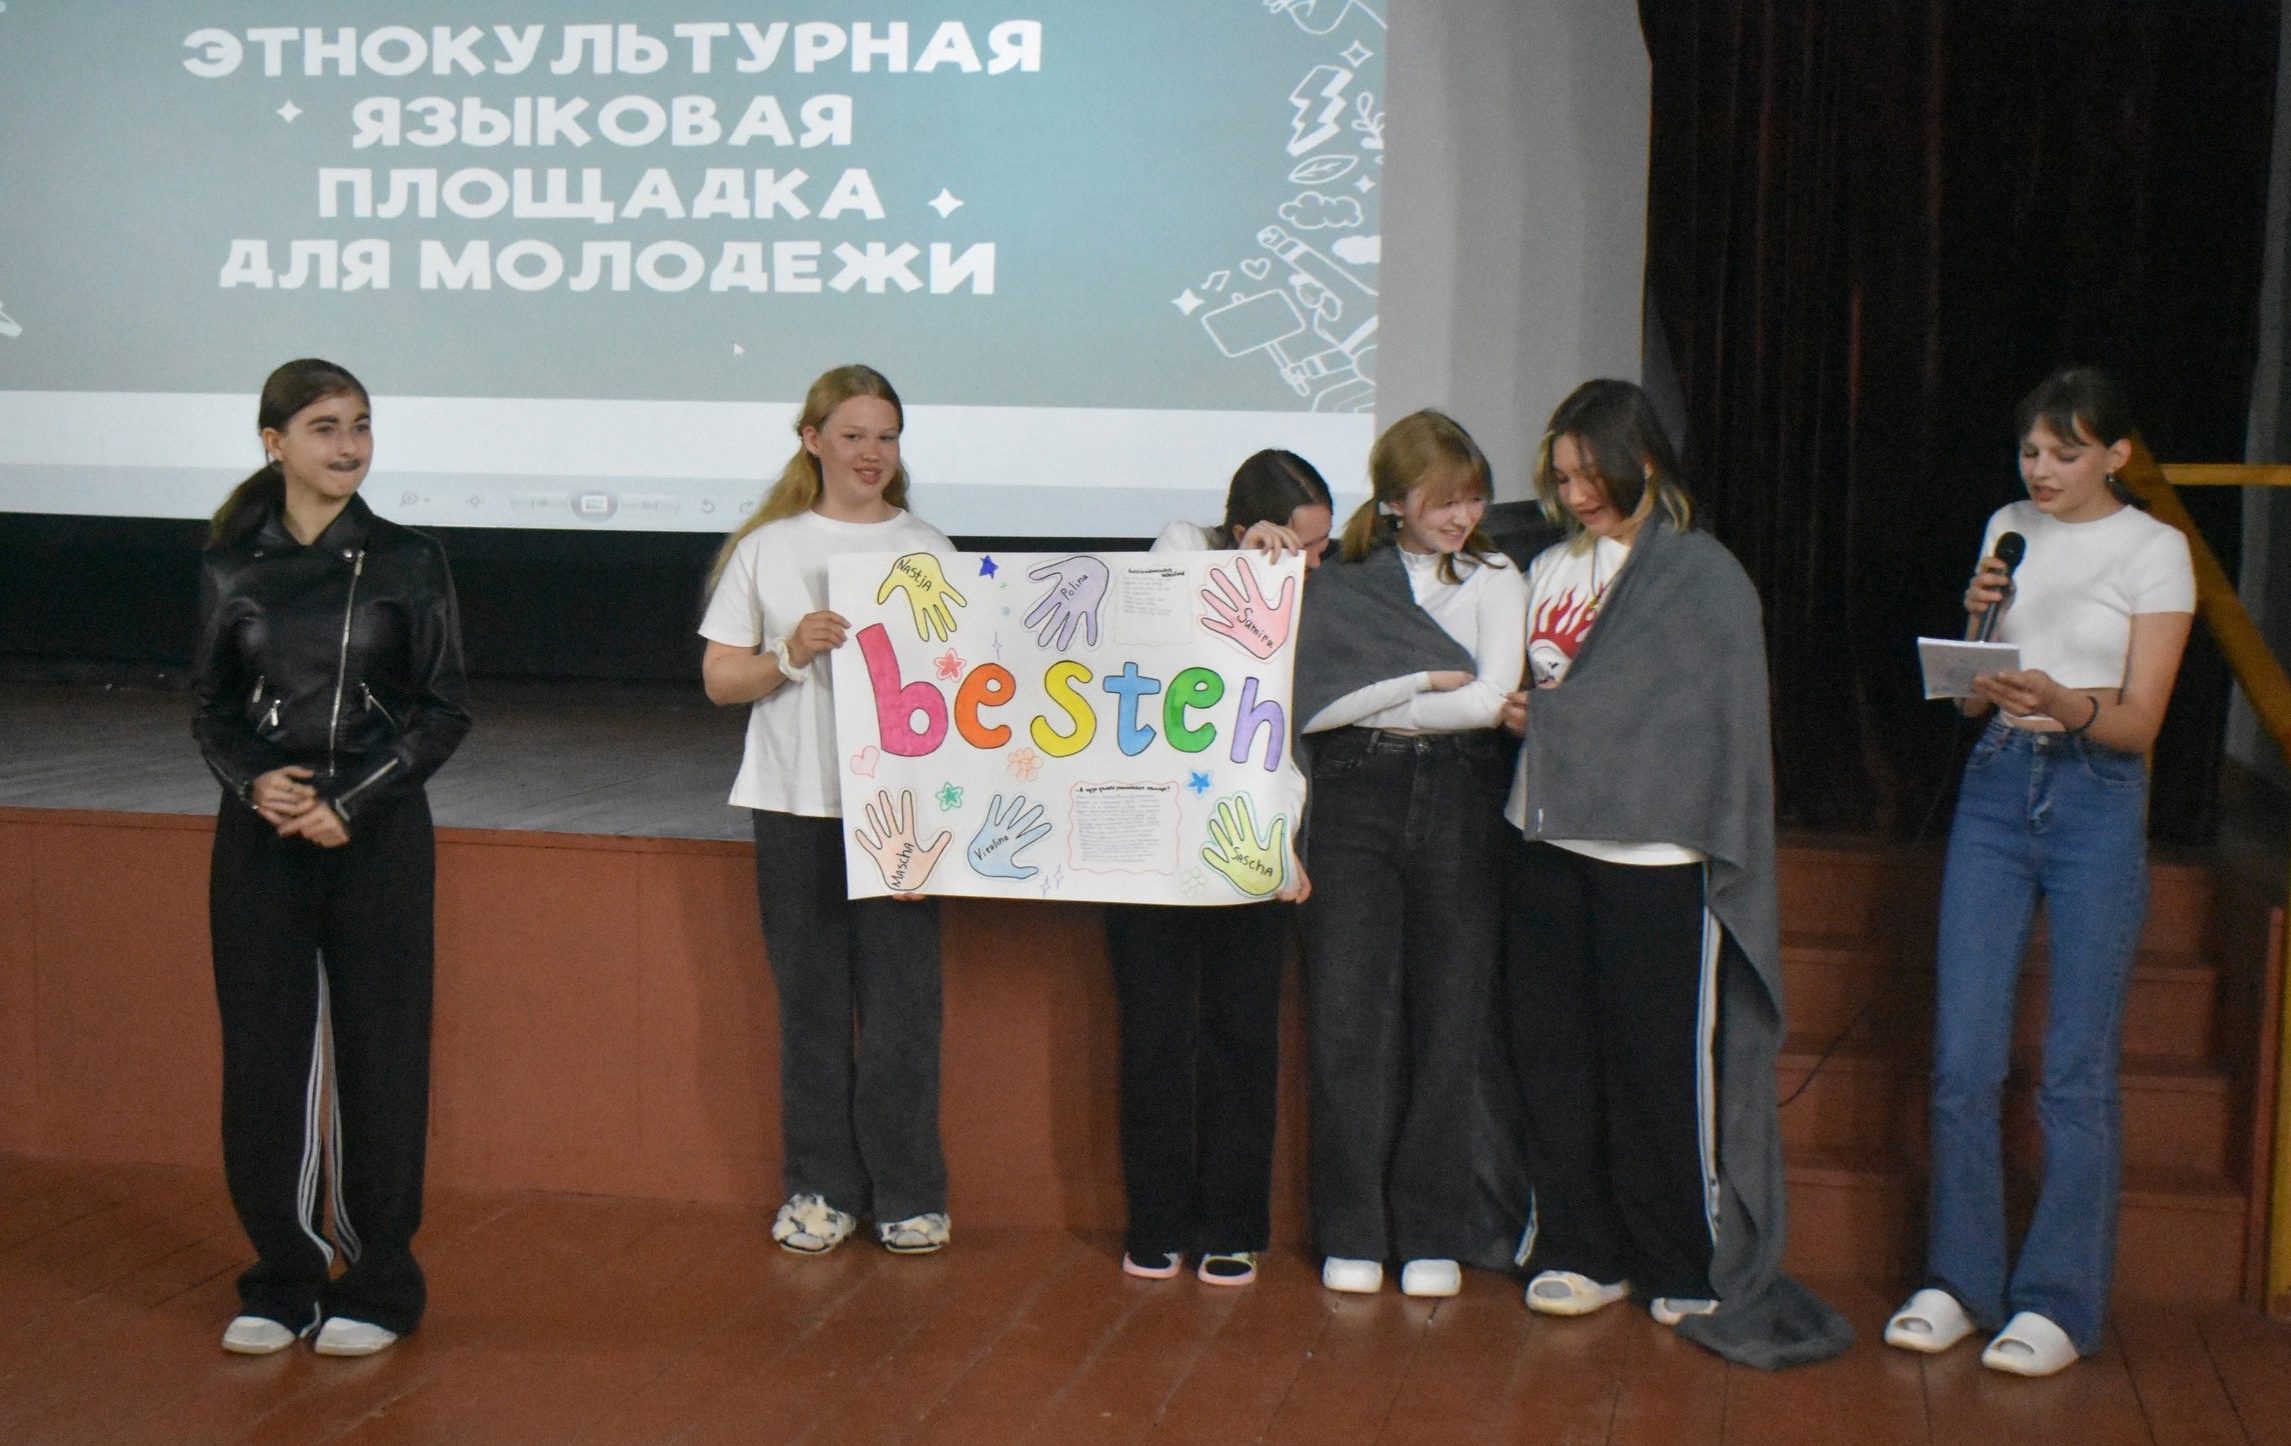 Избражения для В Новосибирске завершилась «Этнокультурная языковая площадка для молодёжи»